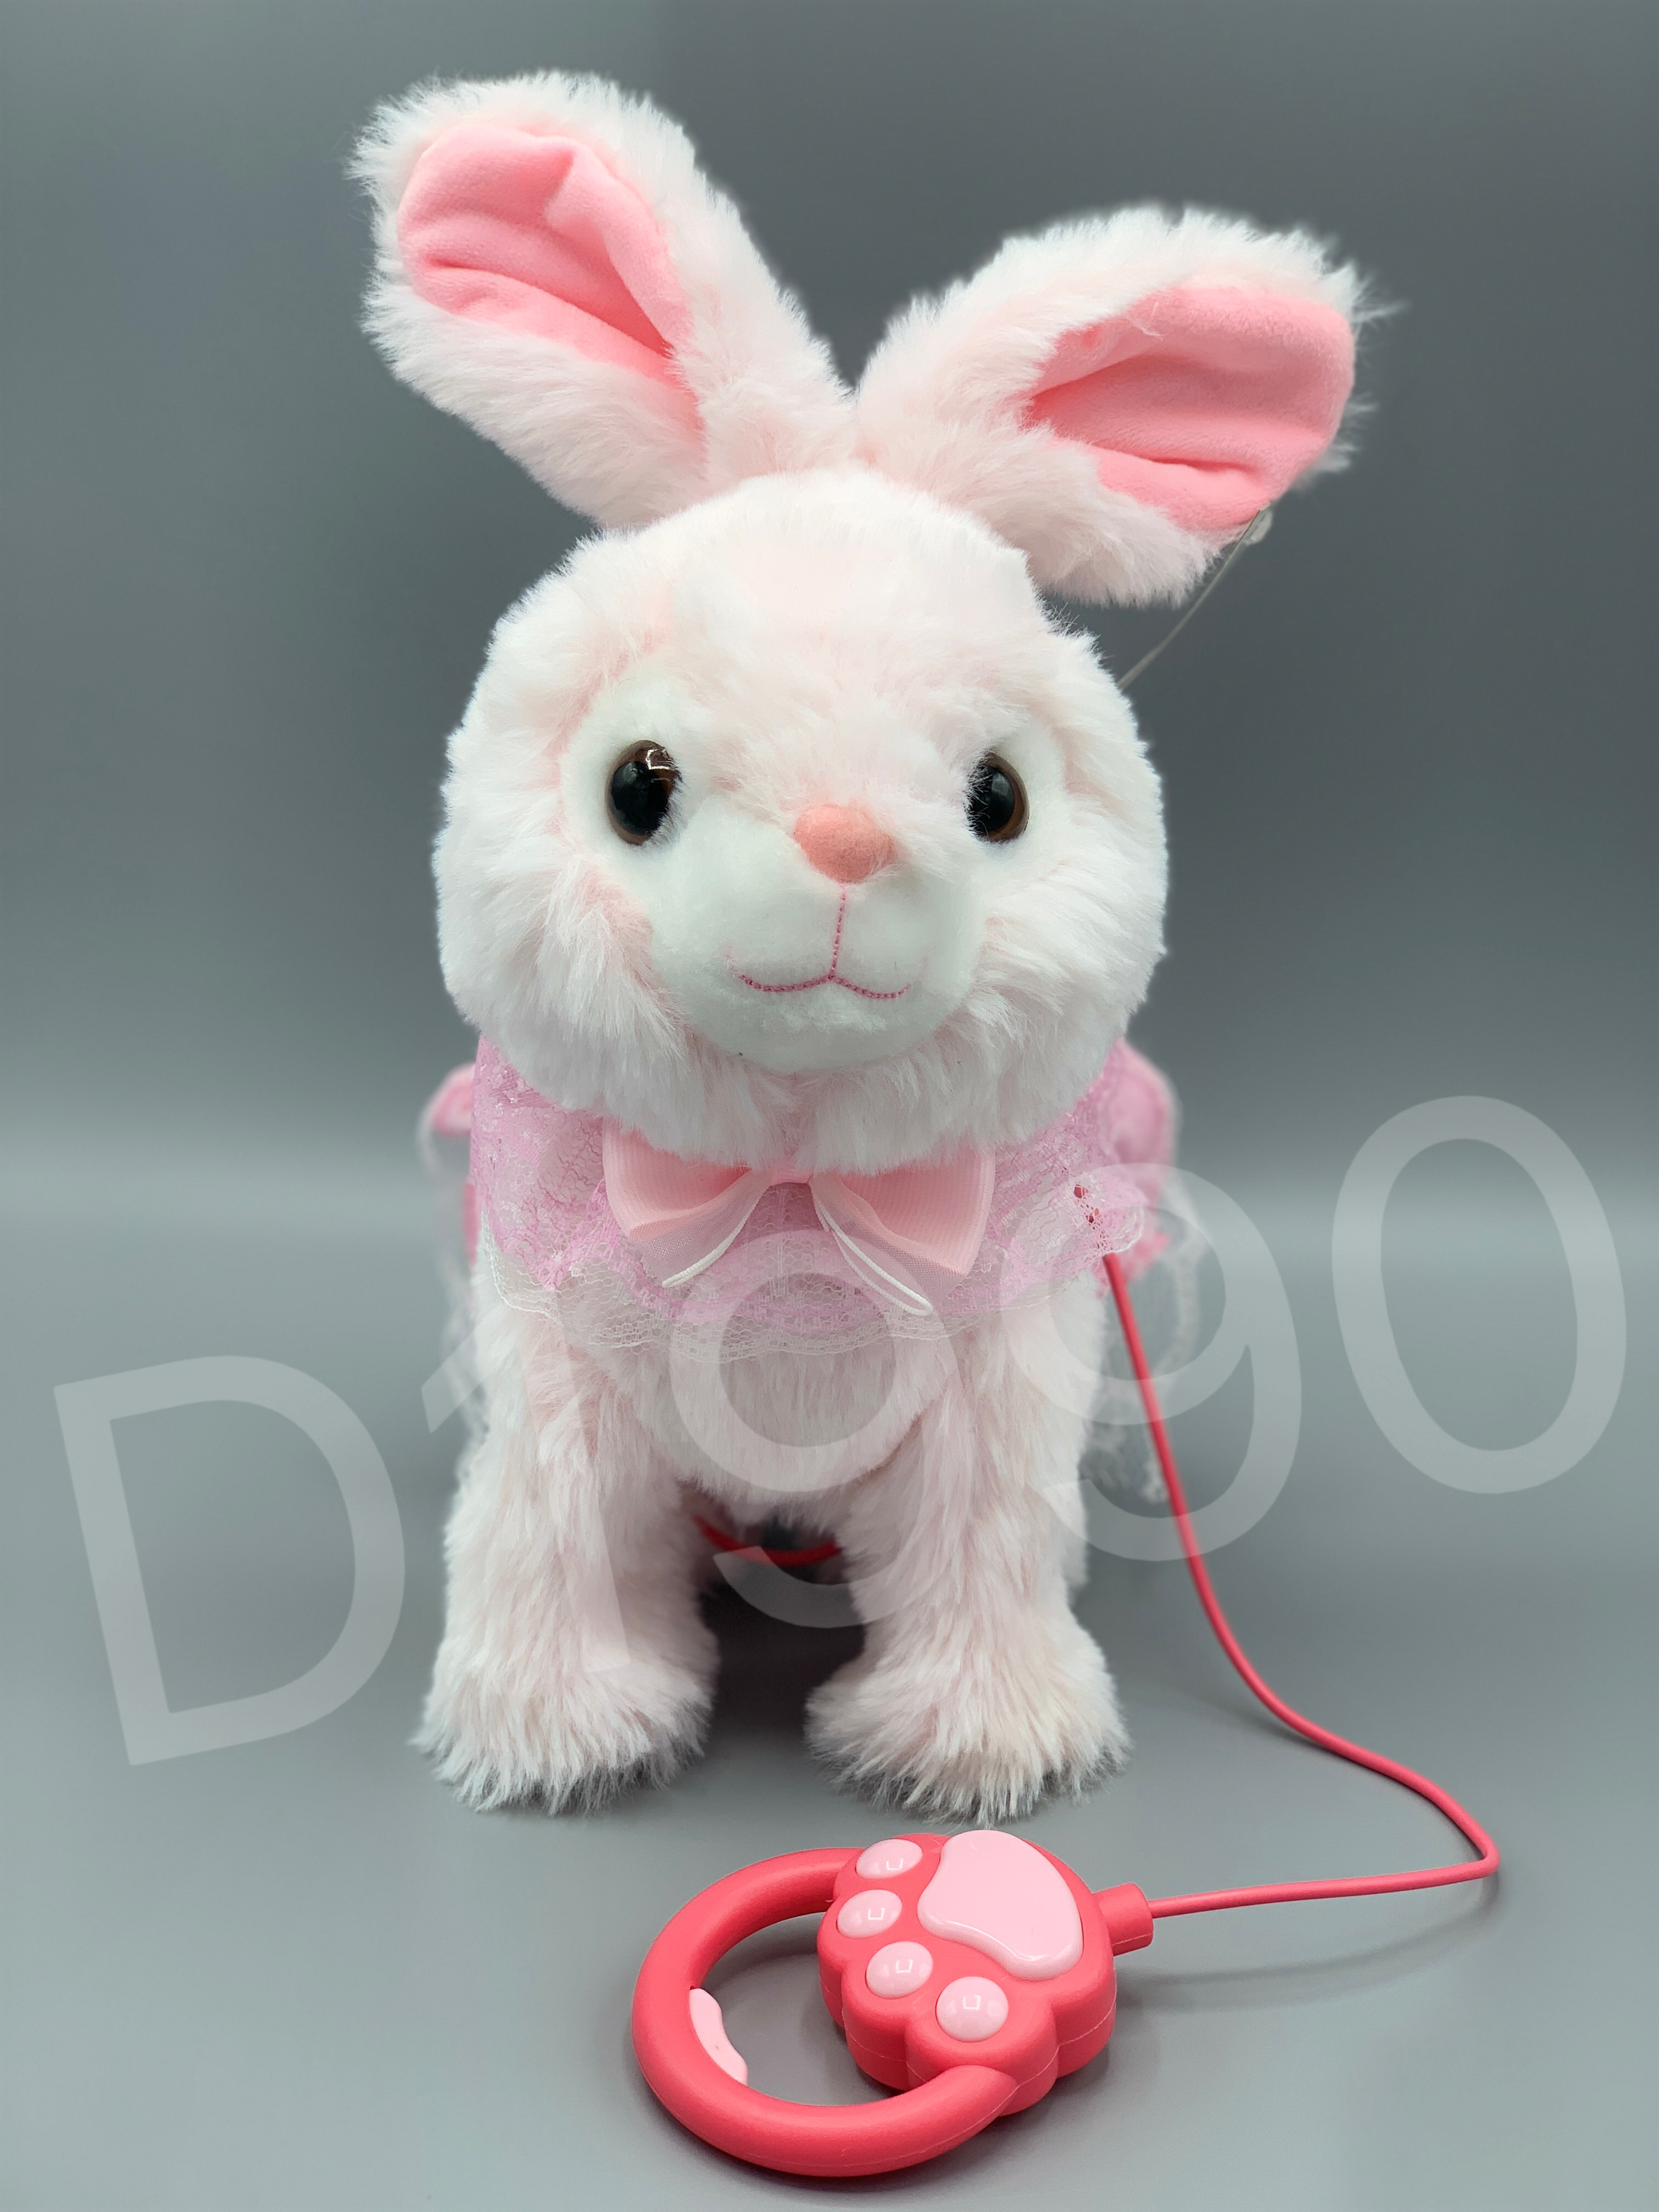 毛绒电动玩具兔子会蹦会走会唱歌能录音的玩具公仔兔子外贸跨境批发细节图